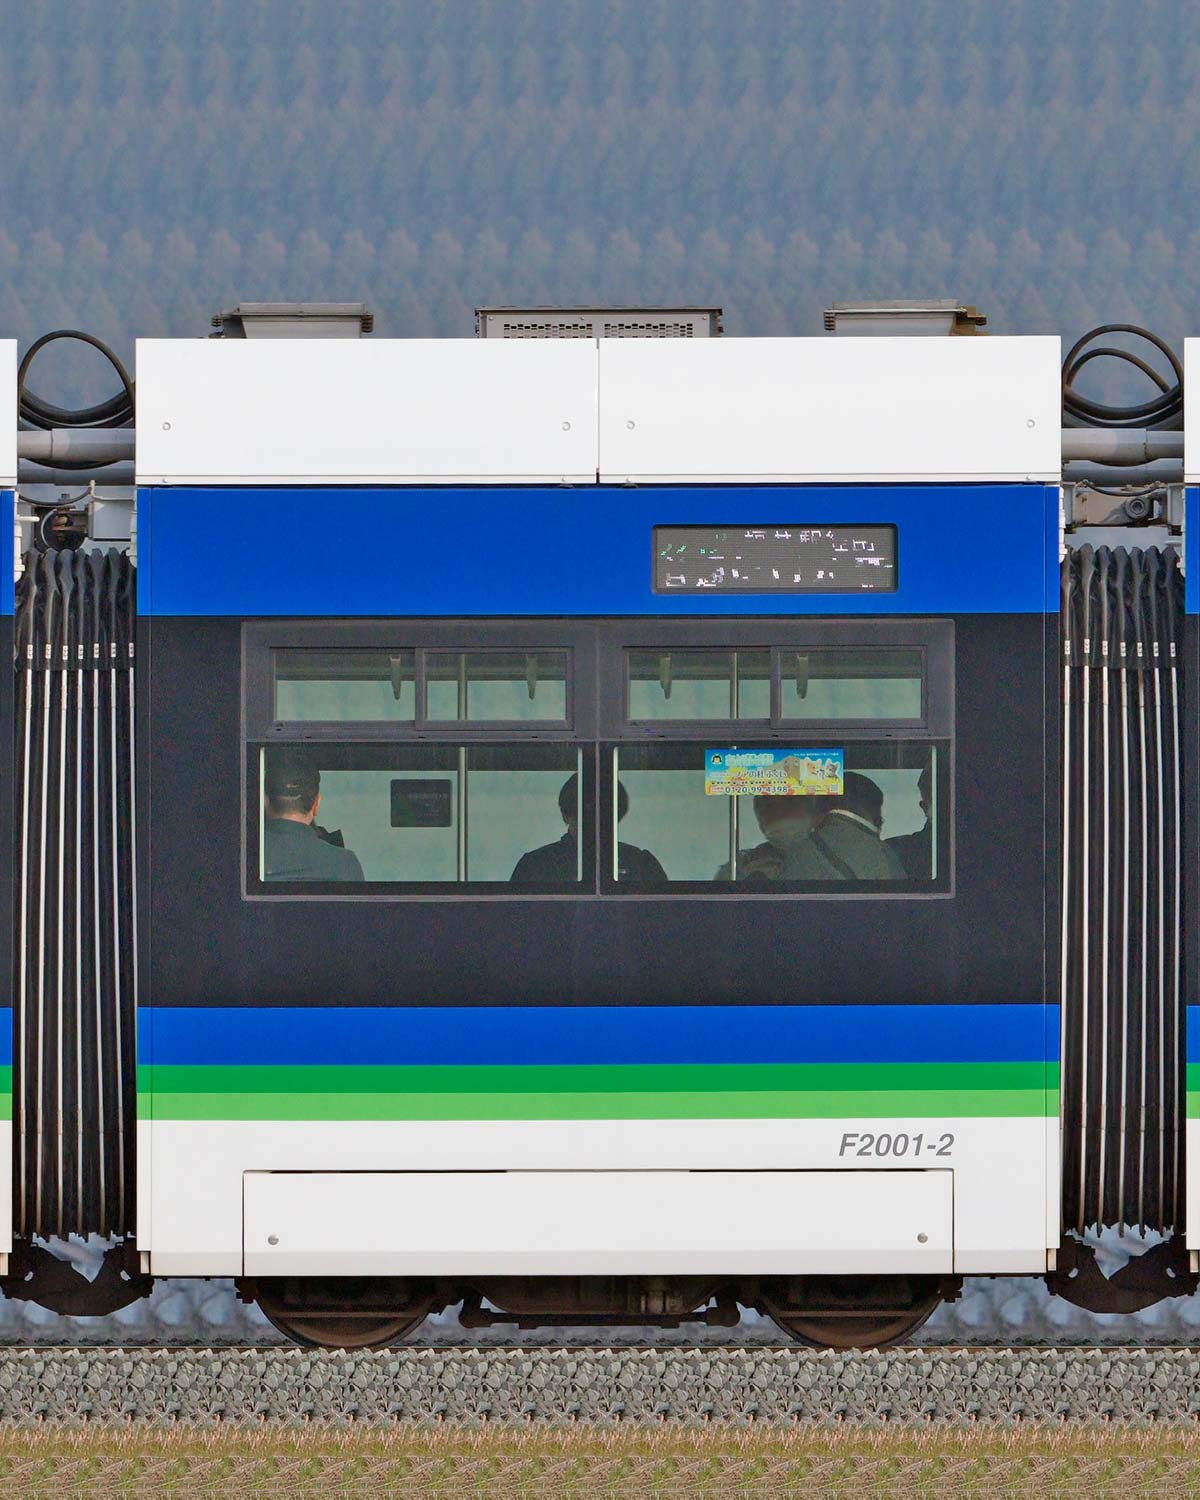 福井鉄道F2000形「FUKURAM Liner」F2001-2非公式側の側面写真